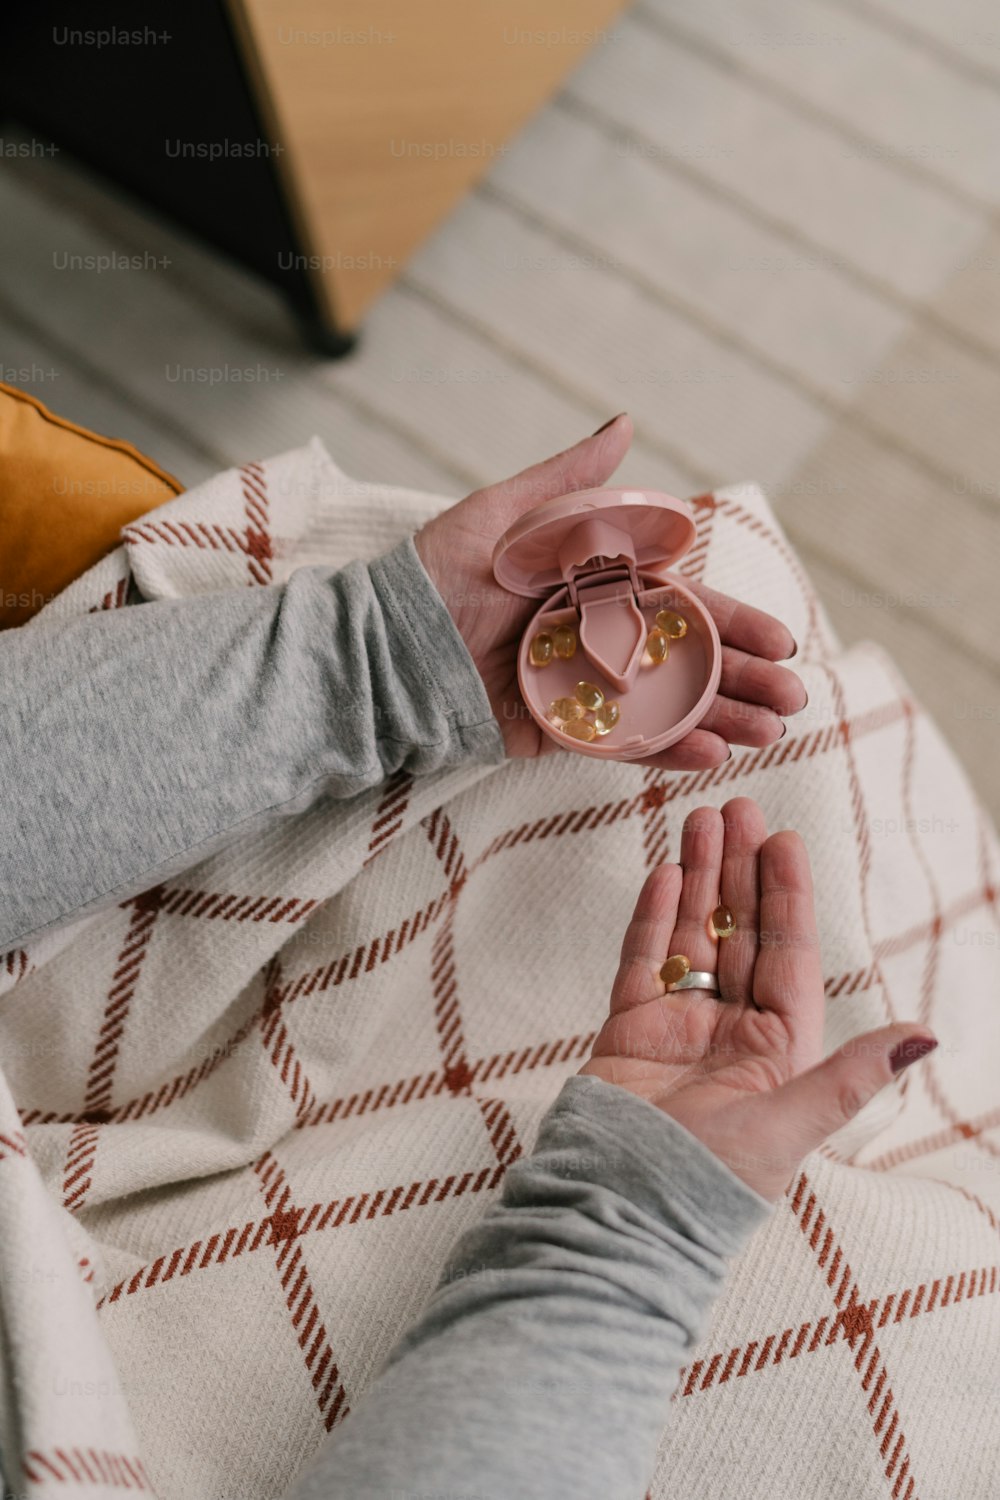 Eine Frau sitzt auf einem Bett und hält einen rosa Ring in der Hand